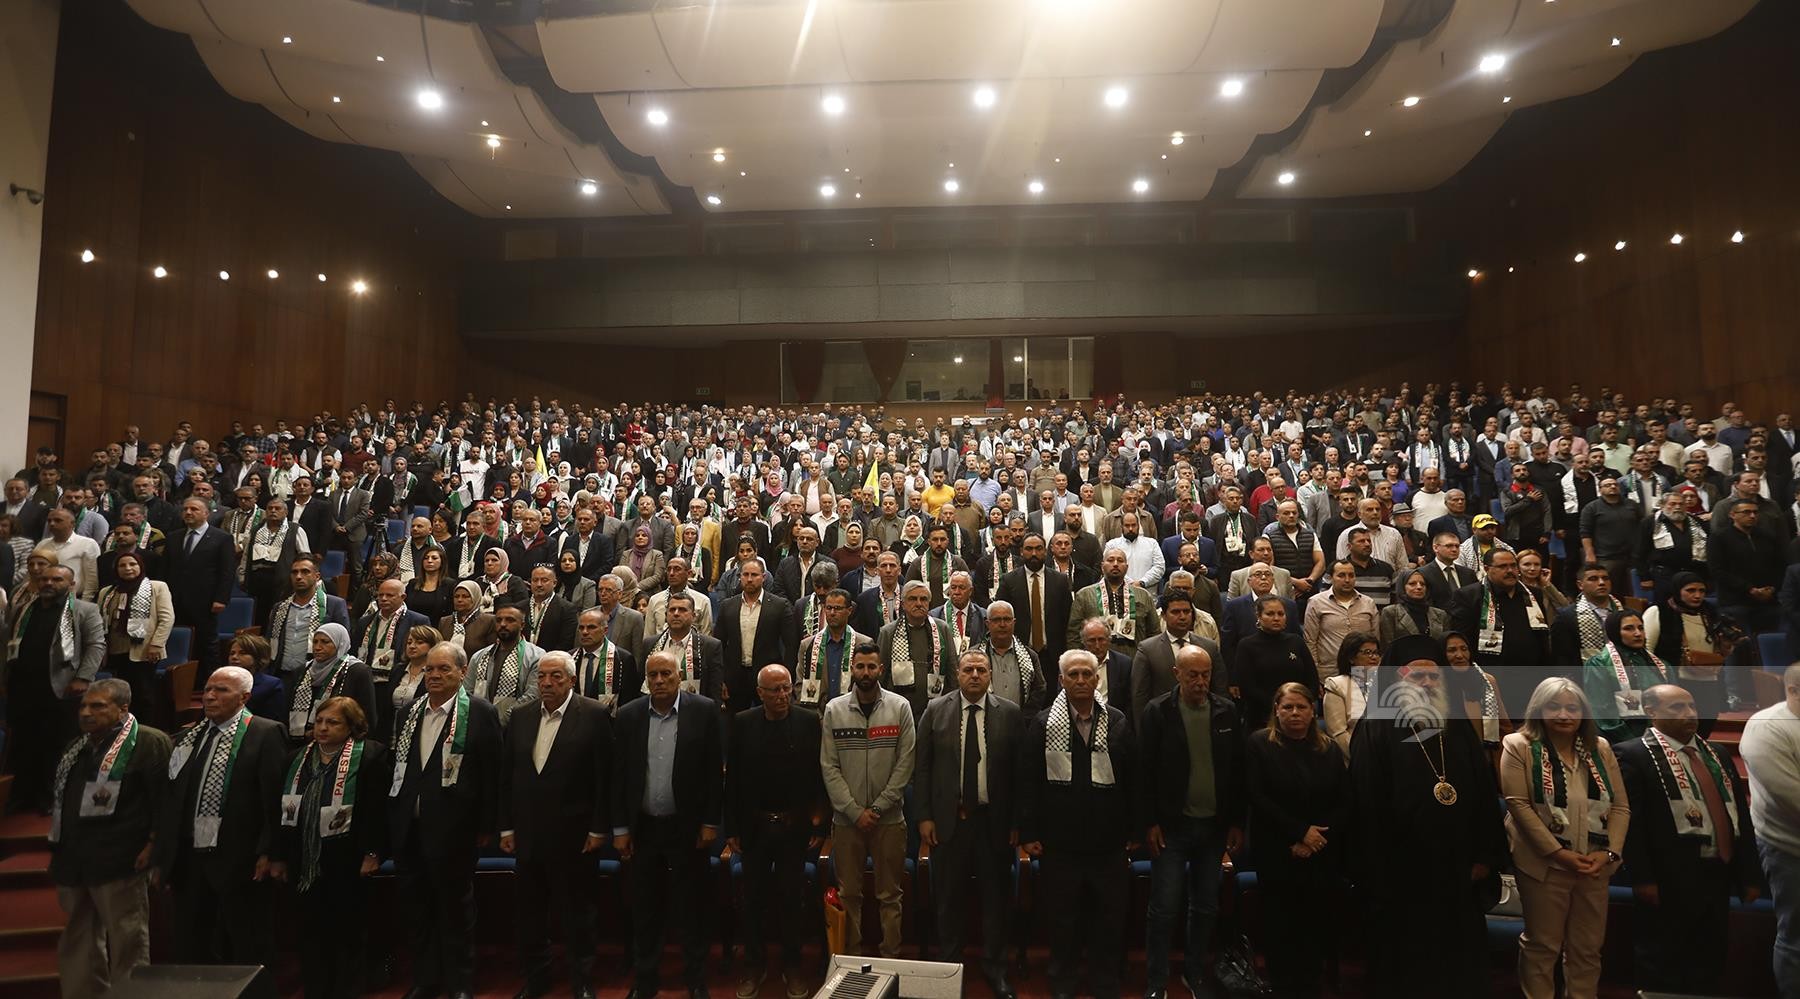 اللجنة الوطنية لاطلاق سراح الاسير القائد مروان البرغوثي تنظم مهرجان جماهيري في الذكرى الـسنوية الـ21 لاعتقاله 55.jpg